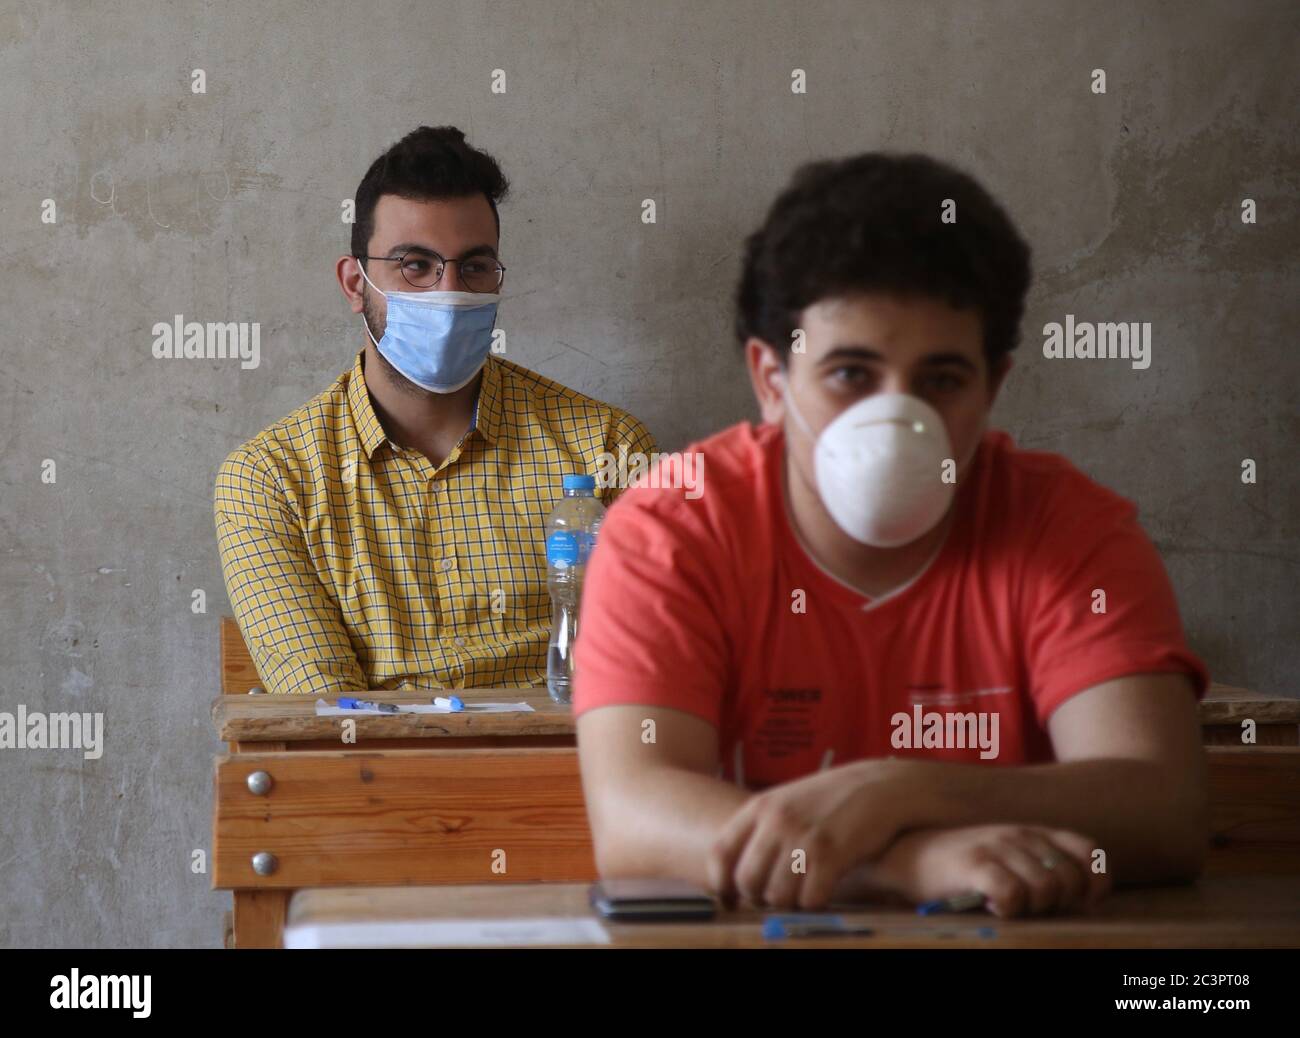 Kairo, Ägypten. Juni 2020. Schüler mit Gesichtsmasken werden am 21. Juni 2020 an einer High School Examenstelle in Kairo, Ägypten, gesehen. Ägypten bestätigte am Sonntag 1,475 neue COVID-19 Infektionen, womit die Gesamtzahl der registrierten Fälle im Land seit Mitte Februar auf 55,233 gestiegen ist, sagte das ägyptische Gesundheitsministerium. Quelle: Alaa Ahmed/Xinhua/Alamy Live News Stockfoto